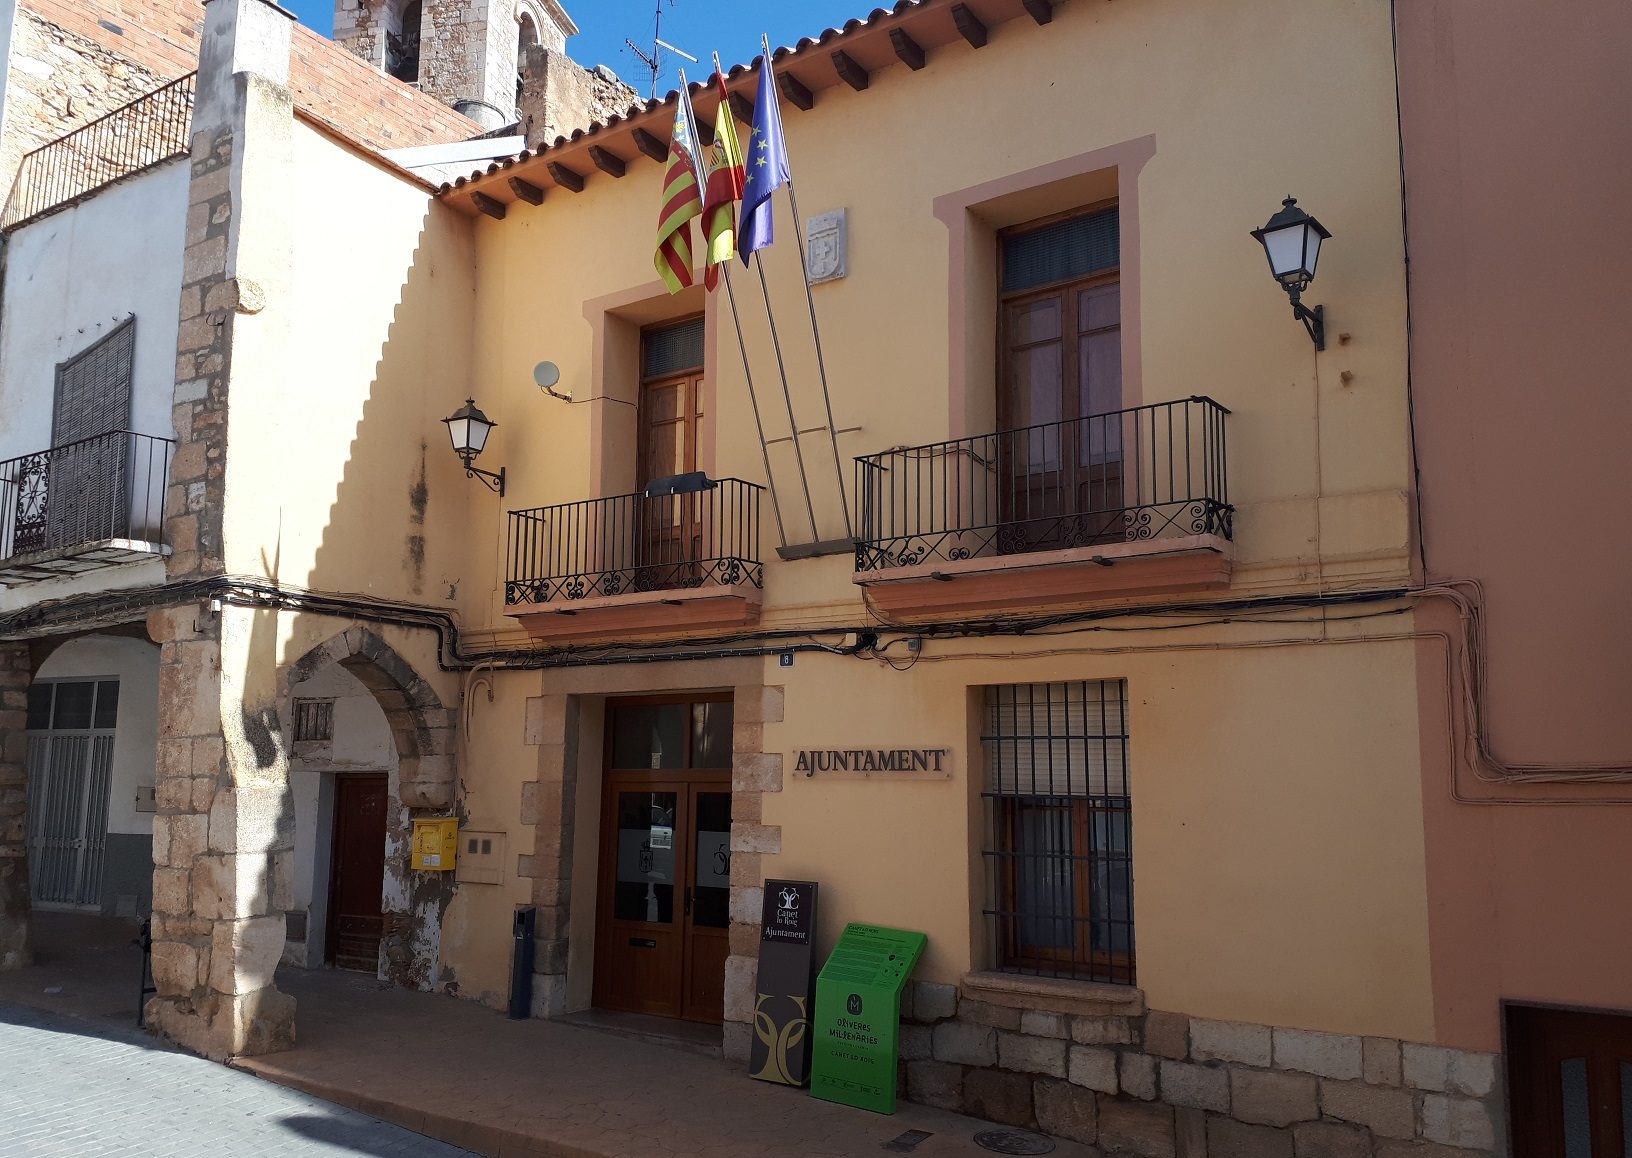 Canet, l'Ajuntament contracta dos veïns a través del programa Avalem Joves de la Generalitat Valenciana